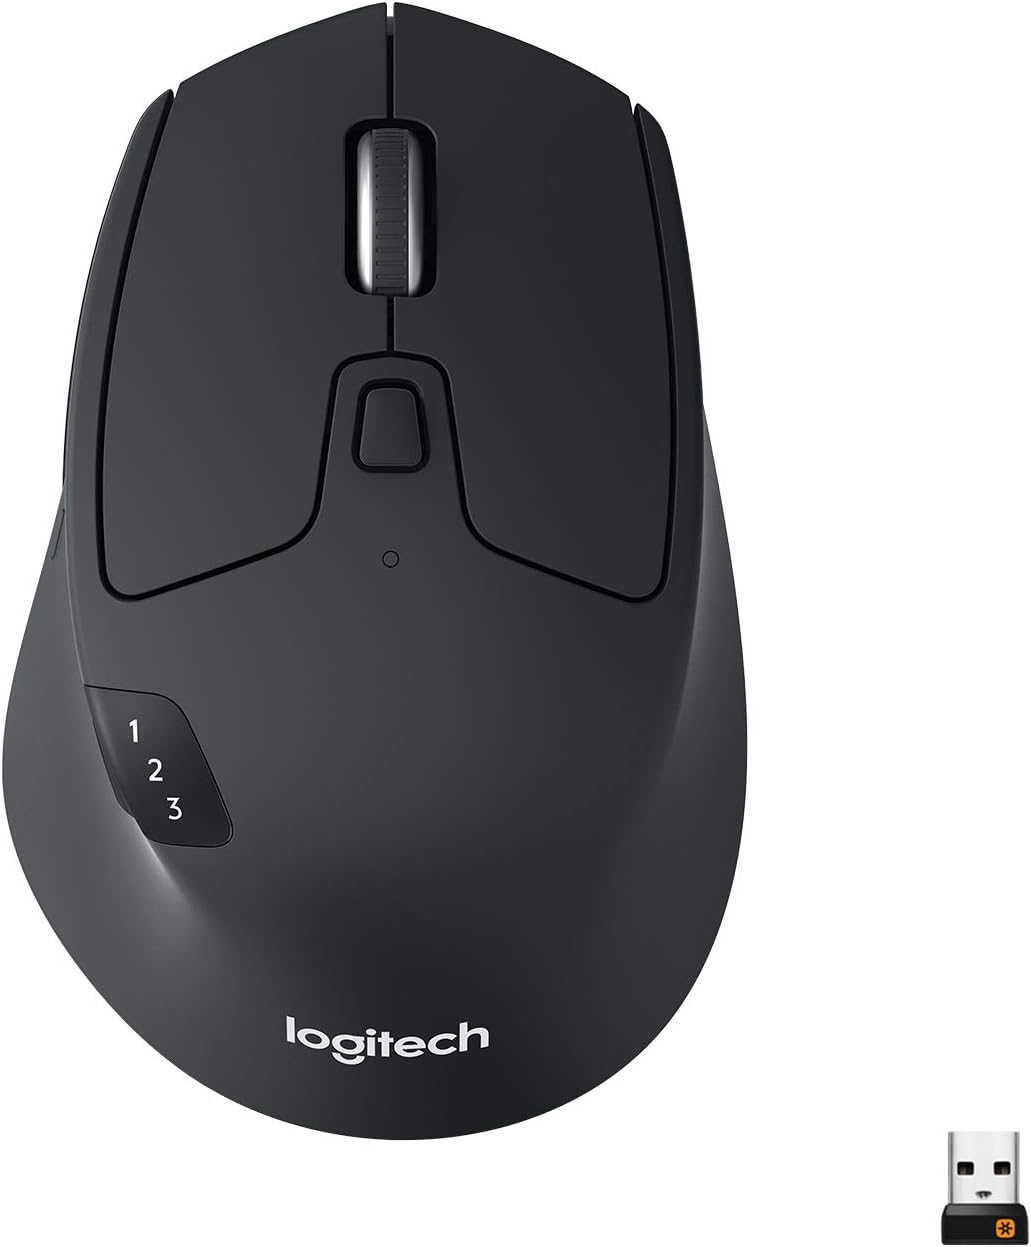 Ein Bild einer schwarzen Logitech M730-Maus